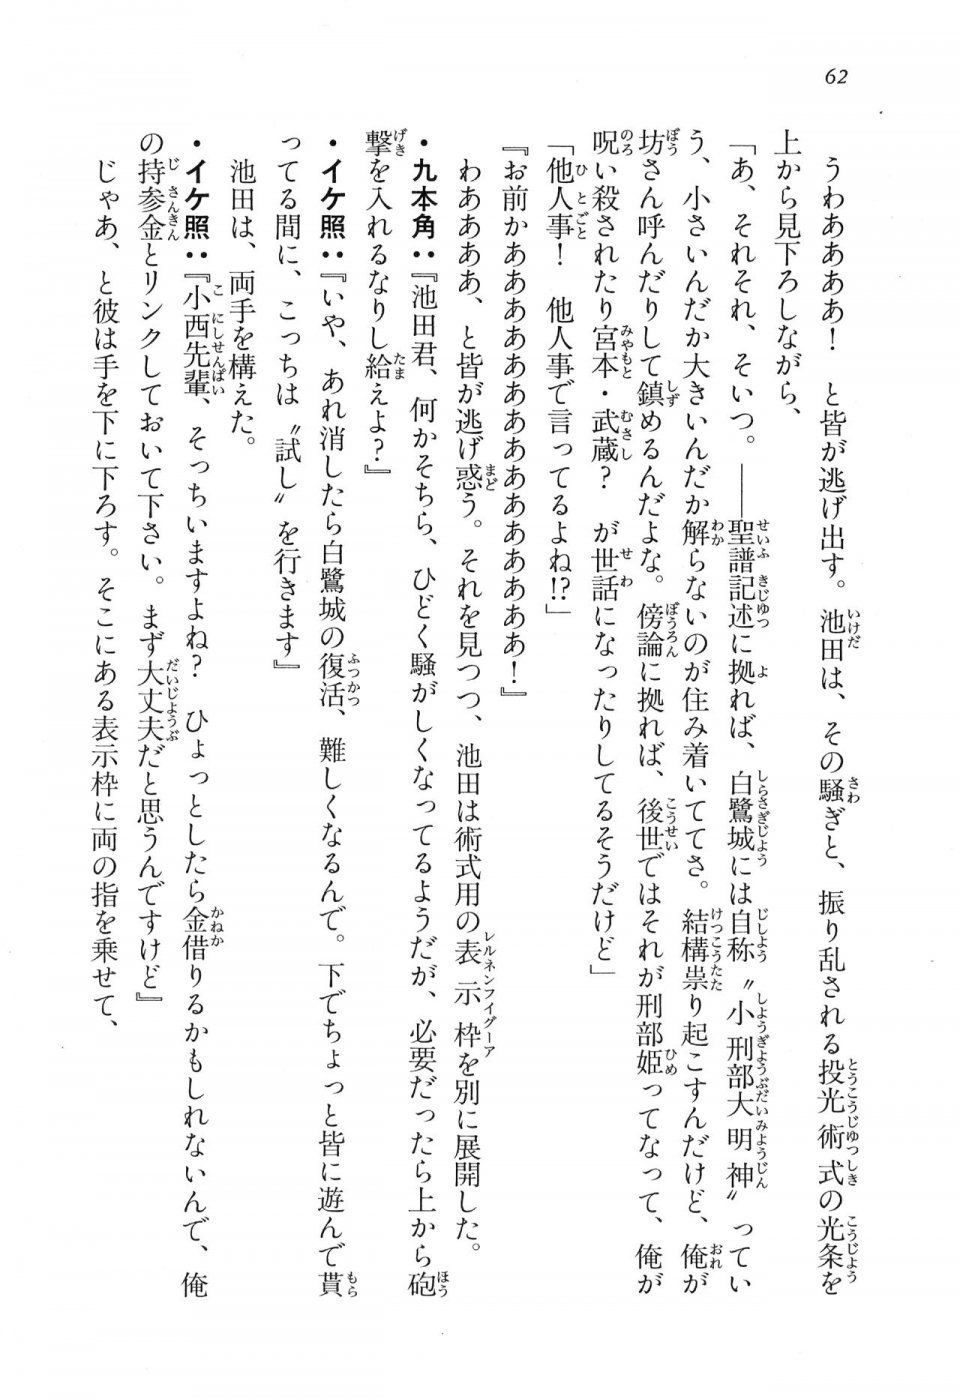 Kyoukai Senjou no Horizon LN Vol 16(7A) - Photo #62